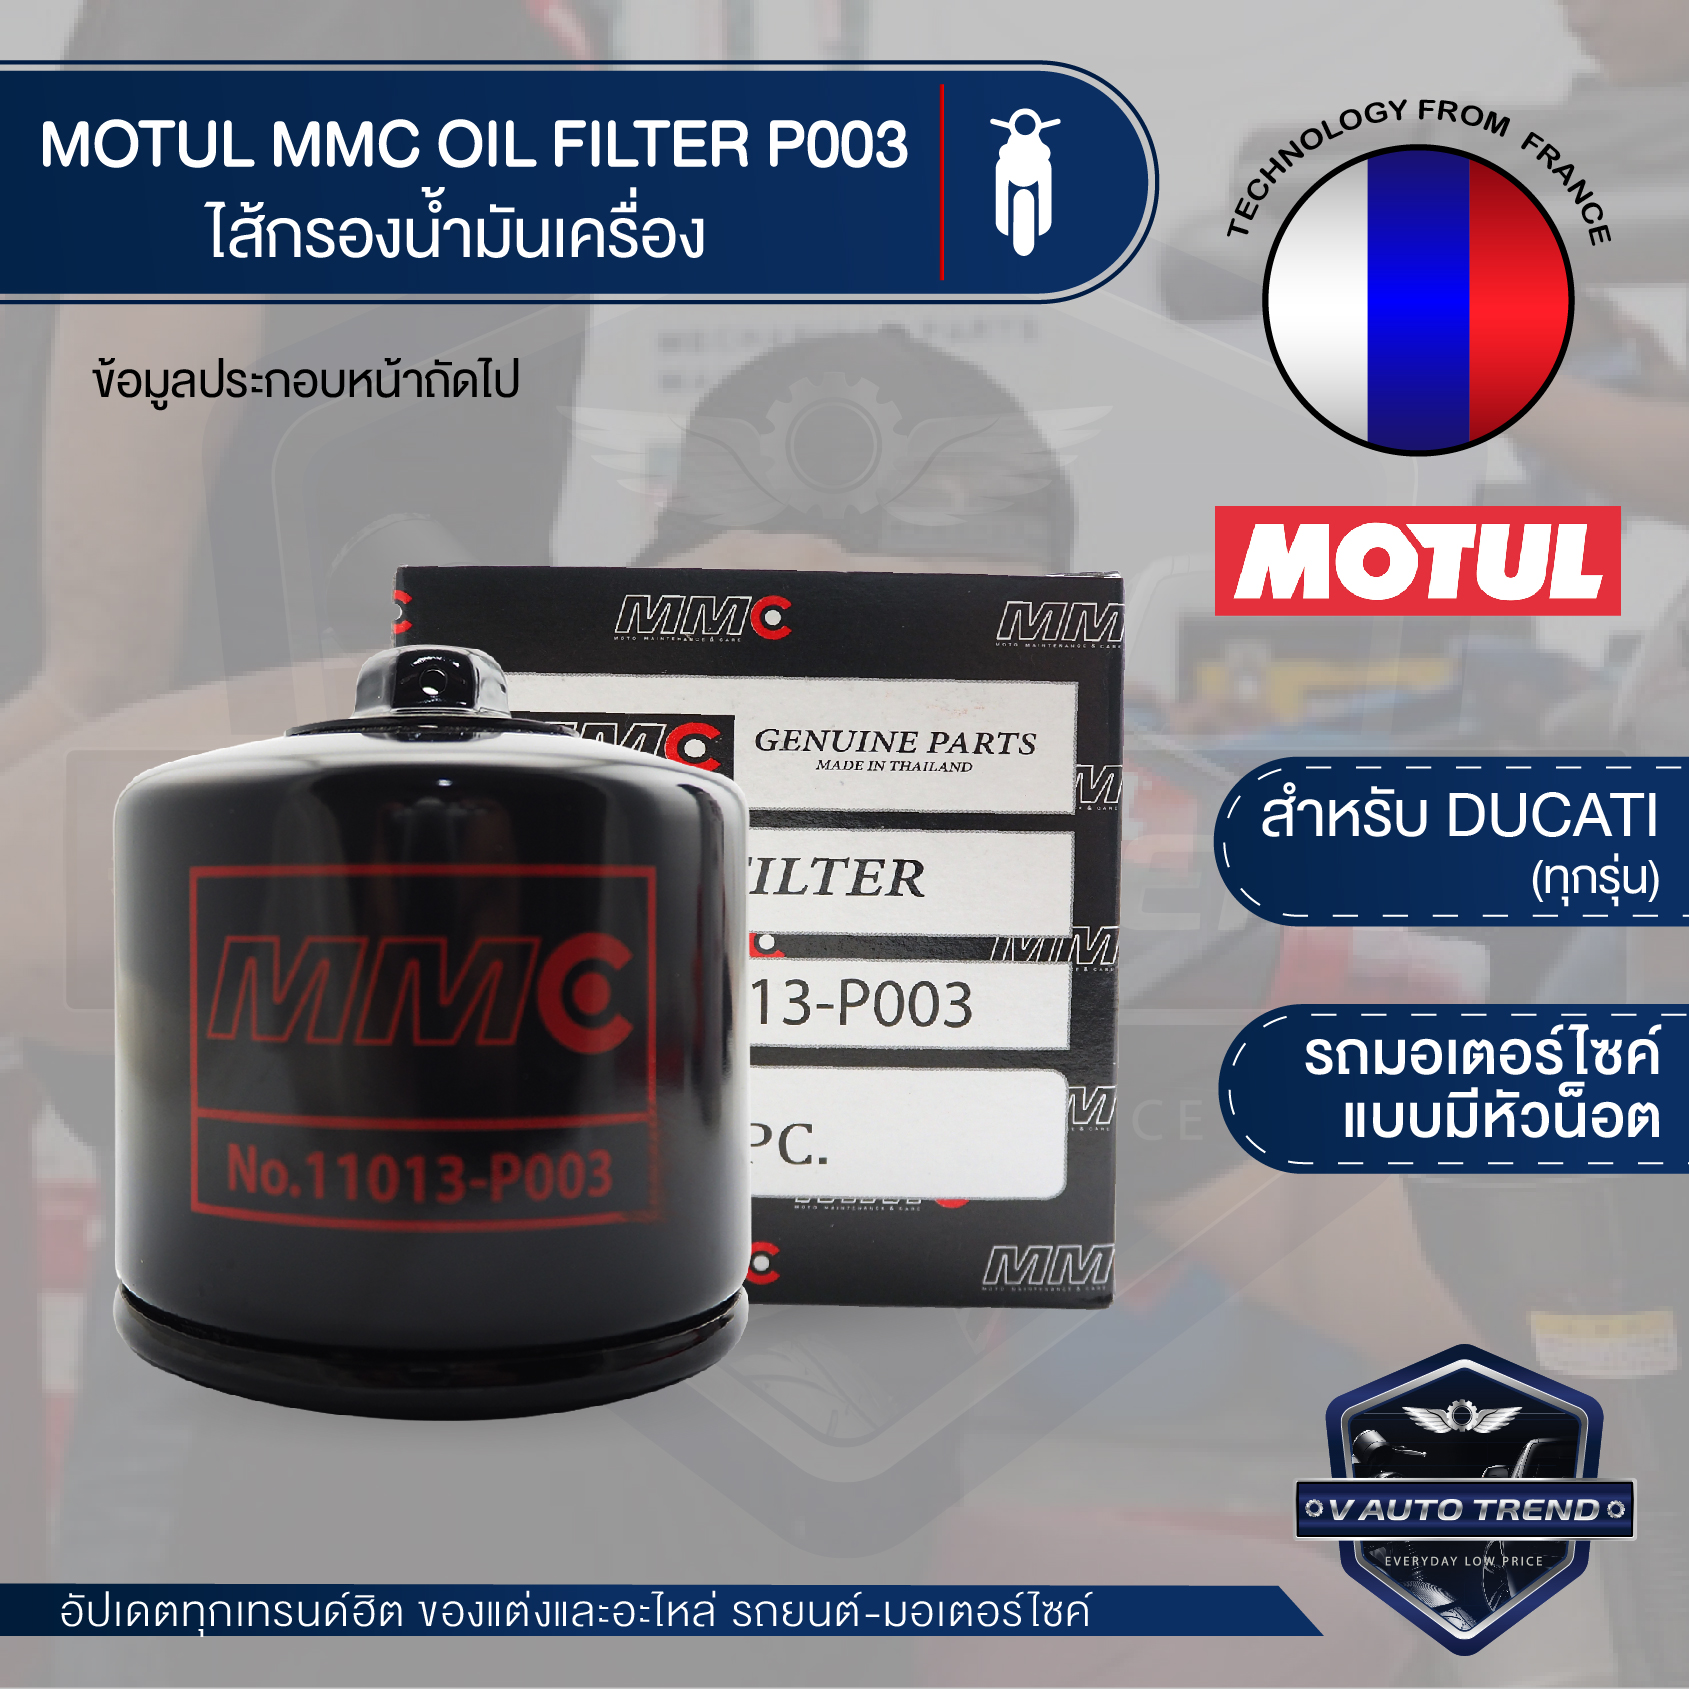 ไส้กรองน้ำมันเครื่อง MOTUL MMC OIL FILTER P003 ไส้กรองมอเตอร์ไซค์แบบมีหัวน็อต ไส้กรอง DUCATI ตรวจสอบรุ่นรถเพิ่มเติมด้านใน